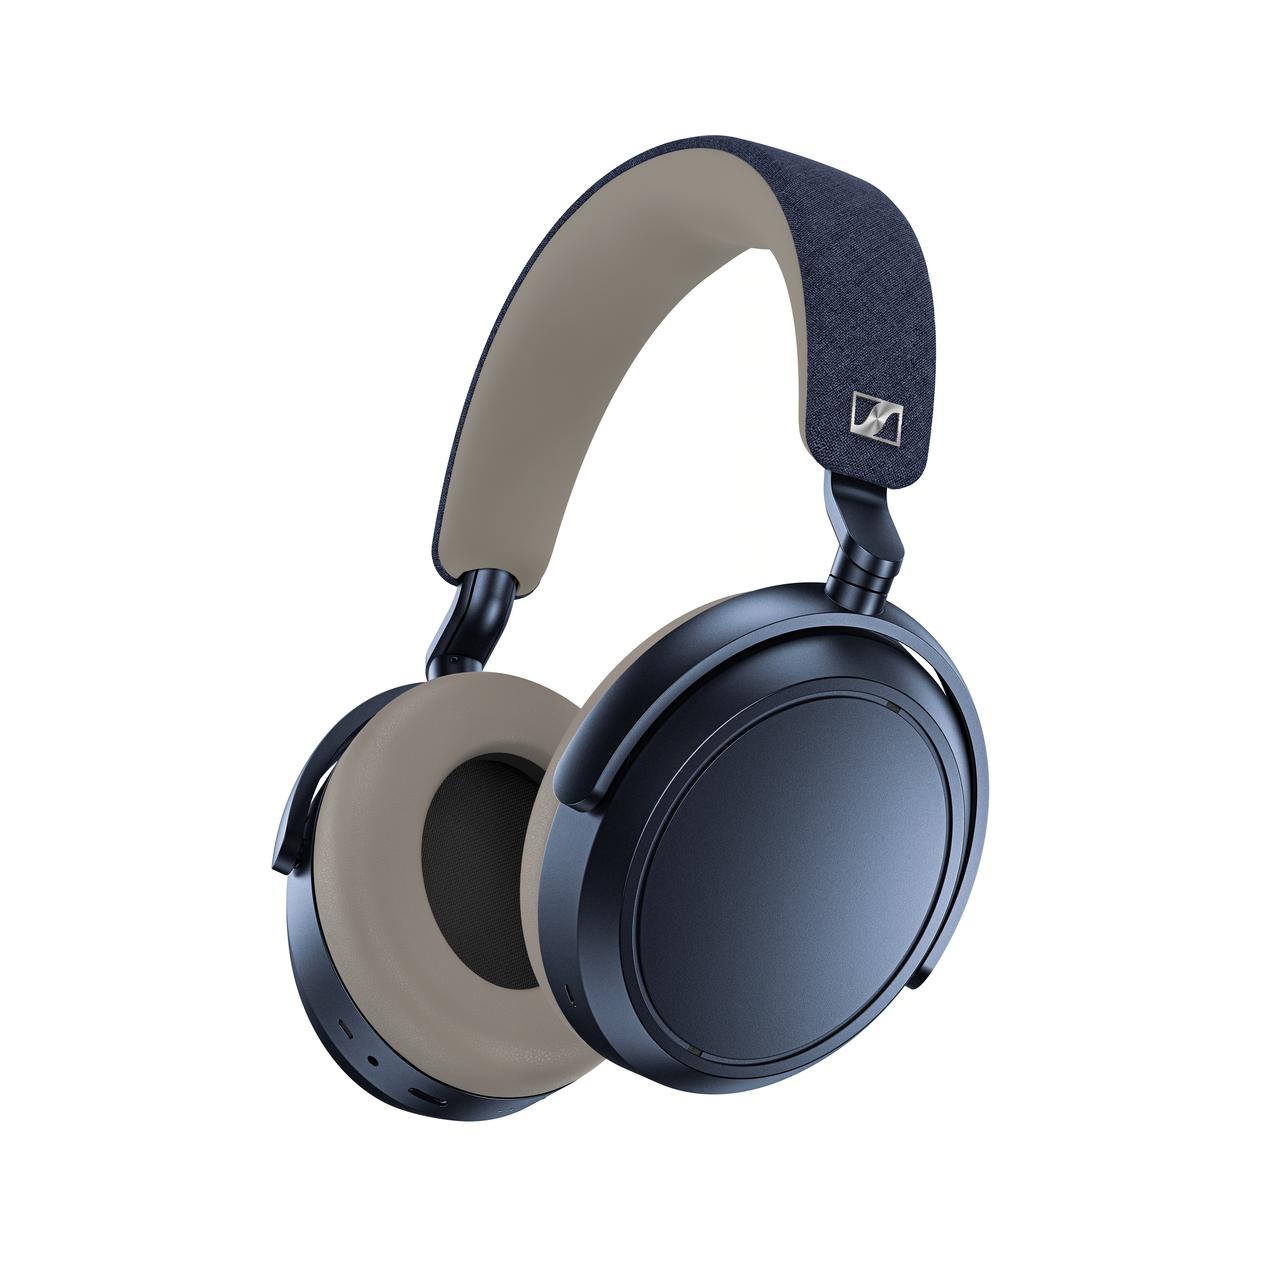 Sennheiser Momentum 4 Wireless Noise-Canceling Headphones - Denim (Open Box)